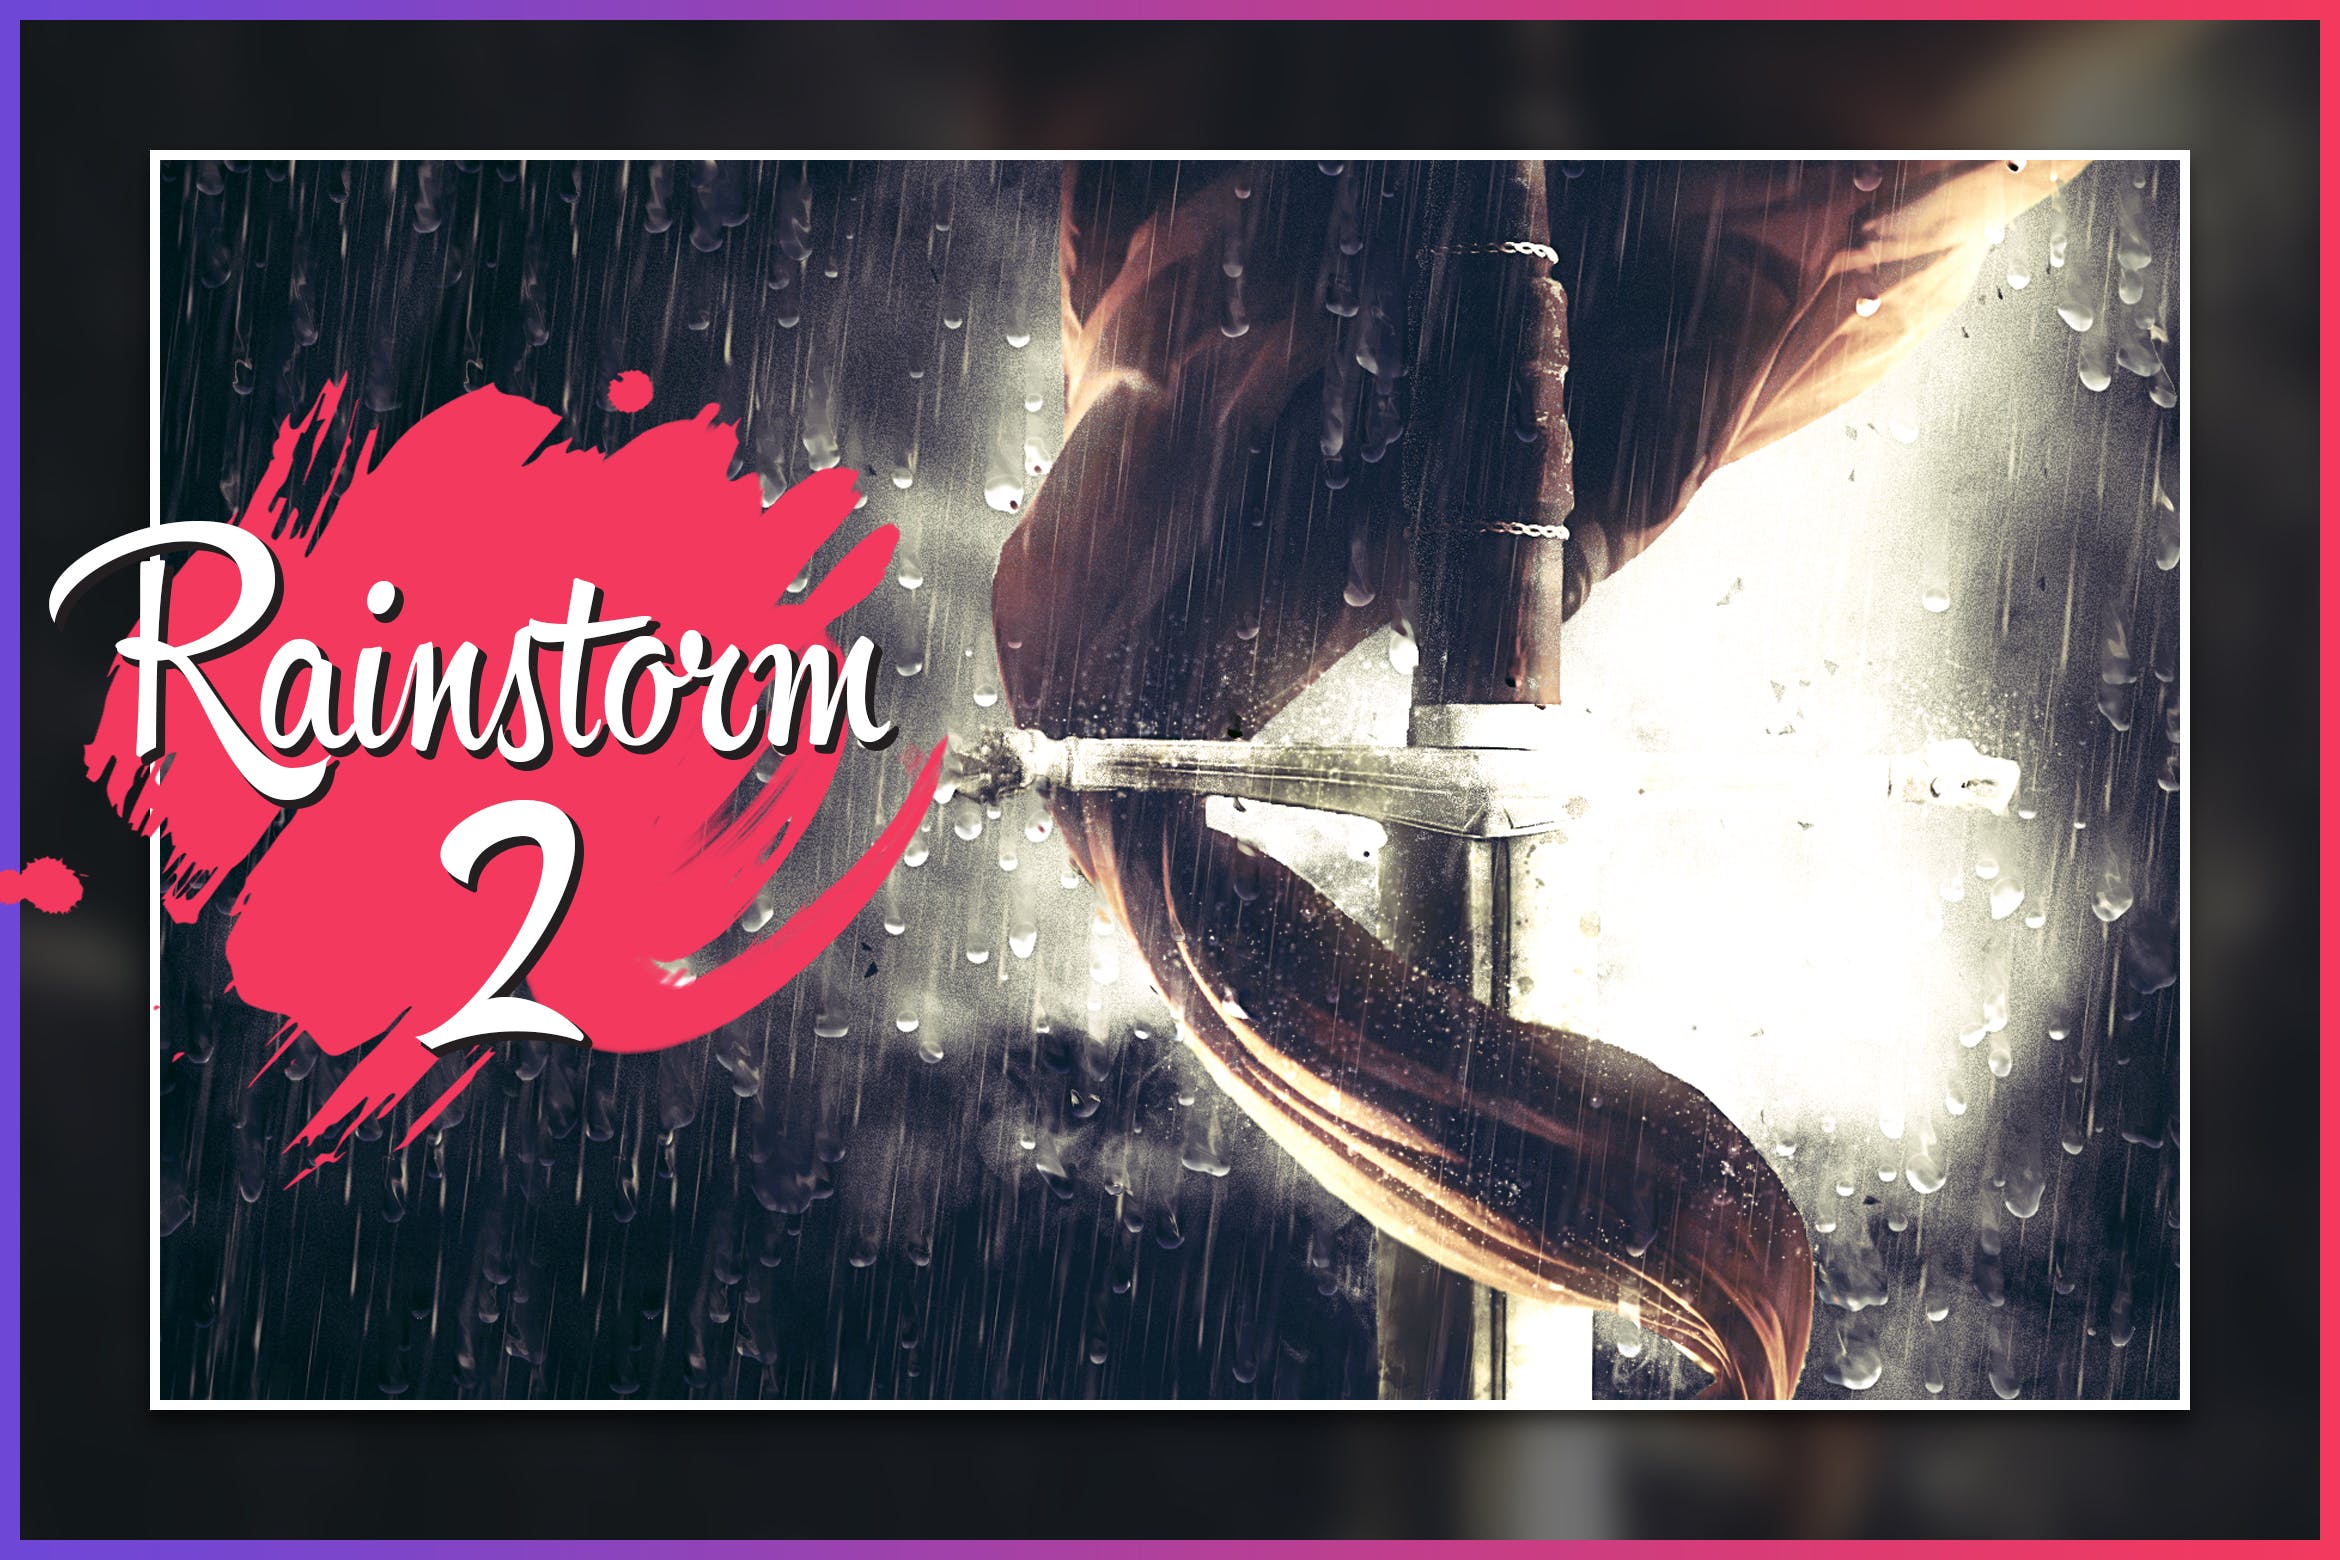 暴风雨照片背景特效16设计素材网精选PS动作 Rainstorm 2 CS4+ Photoshop Action插图